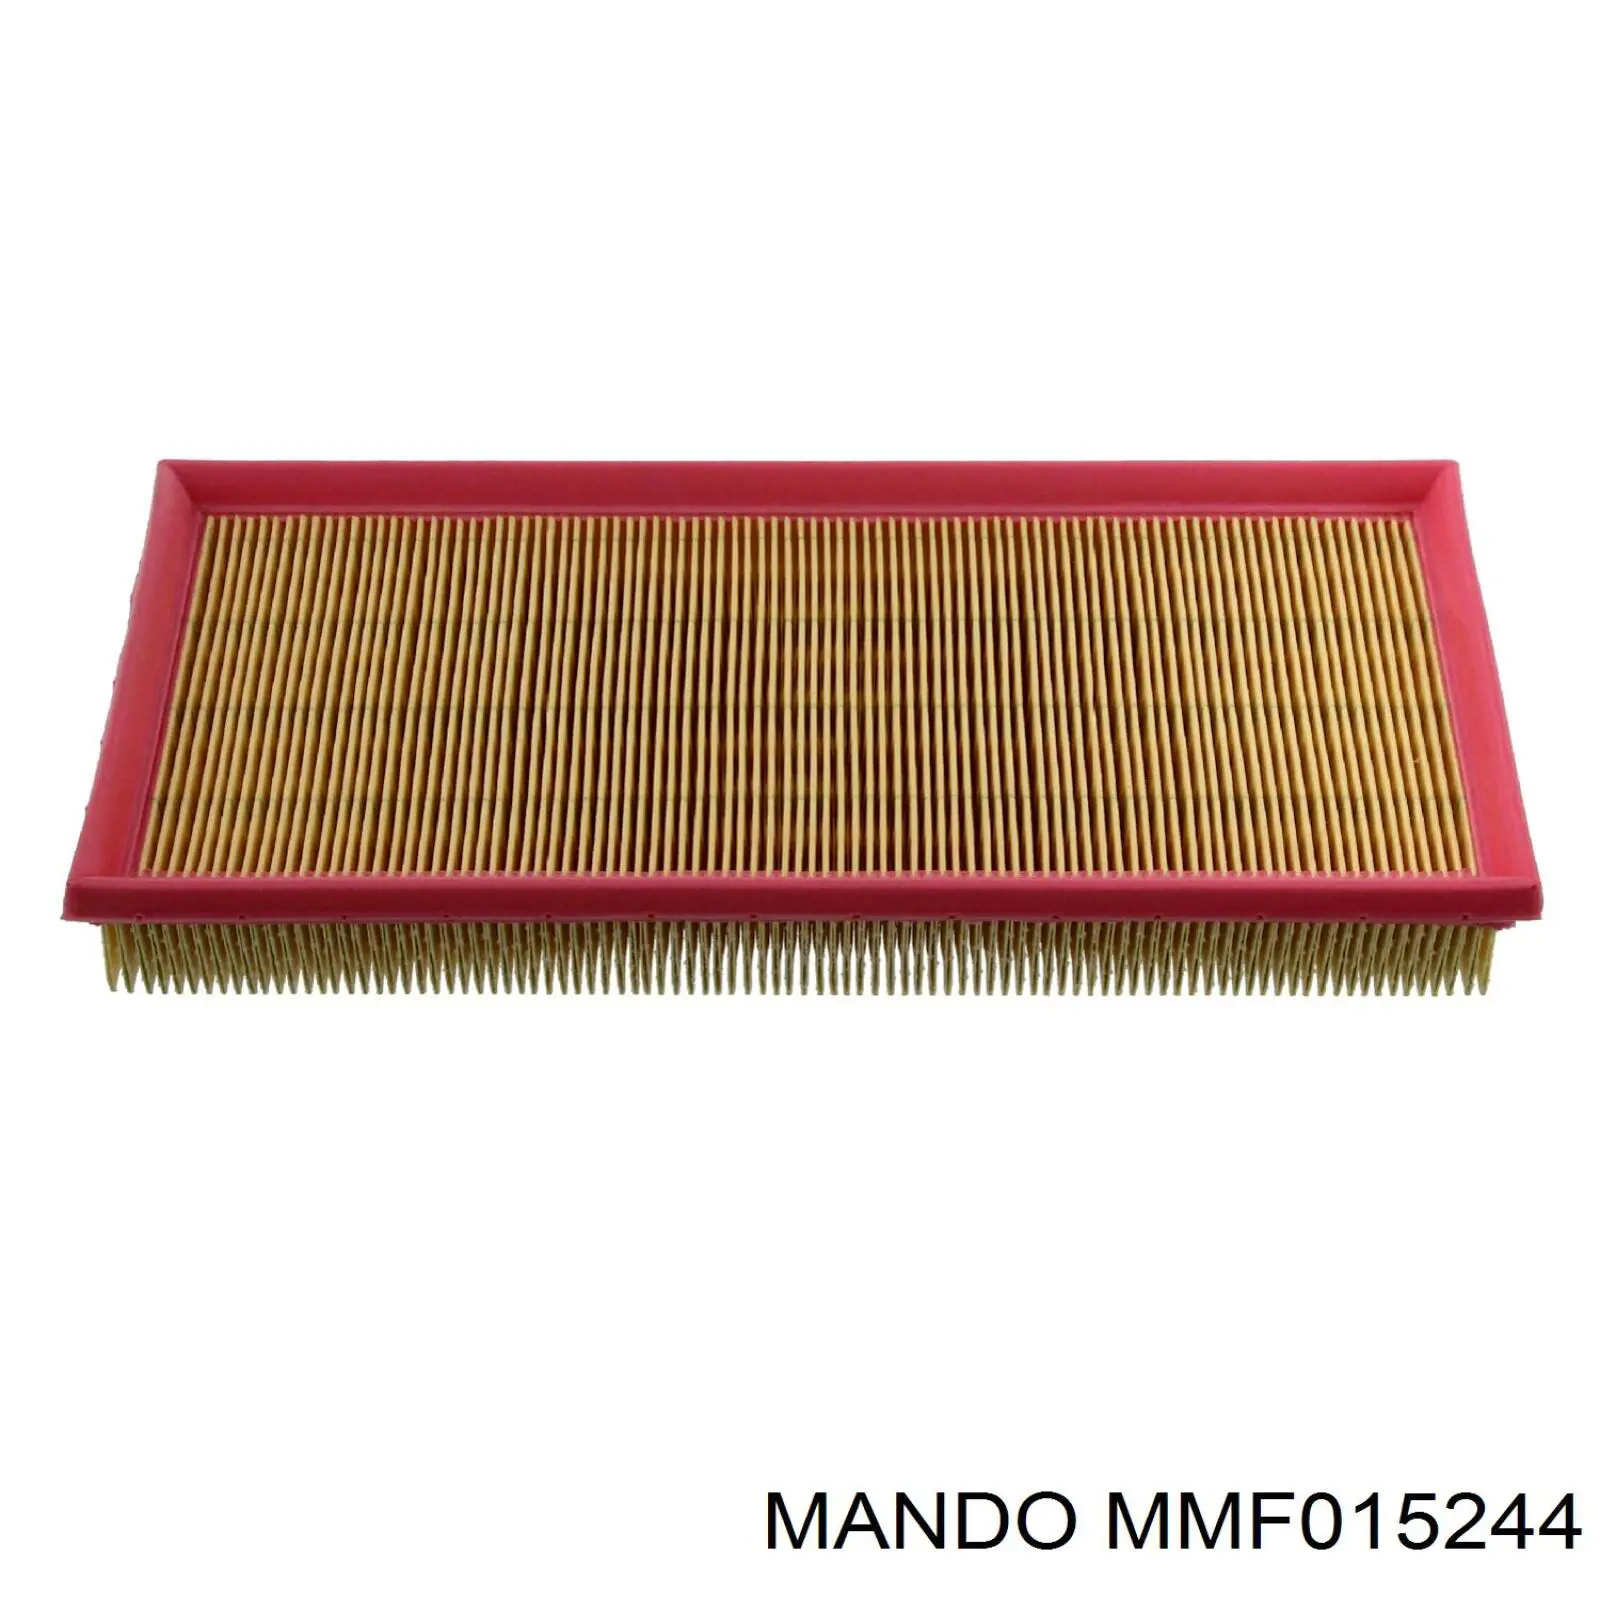 MMF015244 Mando filtro de aire